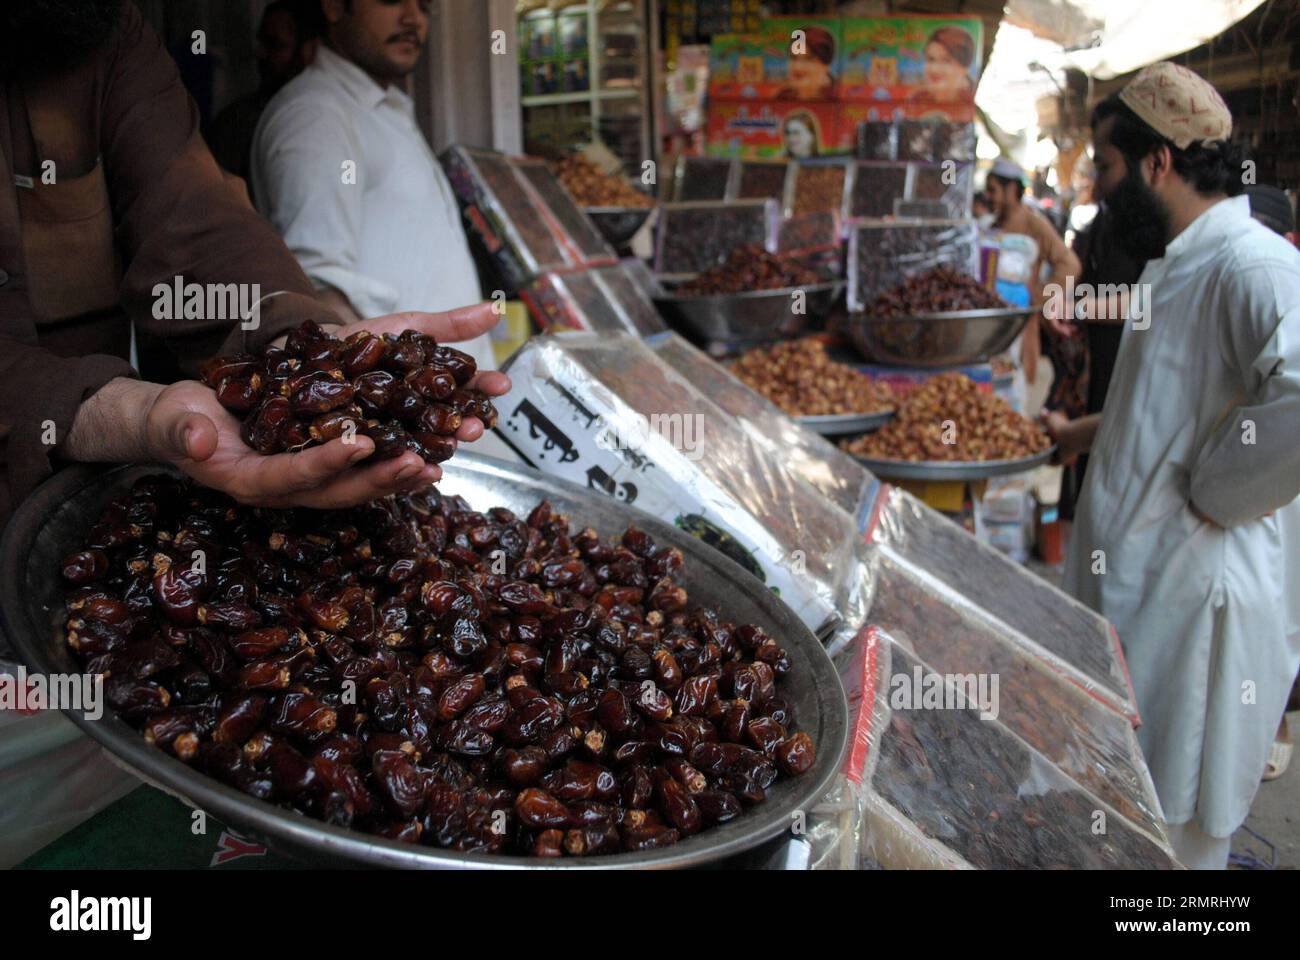 (140721) -- PESHAWAR, 21 de julio de 2014 (Xinhua) -- Los paquistaníes compran fechas en un mercado durante el mes sagrado de Ramadán en Peshawar, en el noroeste de Pakistán, el 21 de julio de 2014. La mayoría de los paquistaníes rompen su ayuno con fechas durante el Ramadán. (Xinhua/Umar Qayyum) PAKISTÁN-RAMADAN-FECHAS PUBLICATIONxNOTxINxCHN Peshawar JULIO 21 2014 DE JULIO LA mayoría de los pakistaníes rompen sus fechas casi con fechas durante el Ramadán XINHUA Umar Qayyum PUBLICATIONxRAVAN PAKISTAN EL 21 2014 de julio Foto de stock